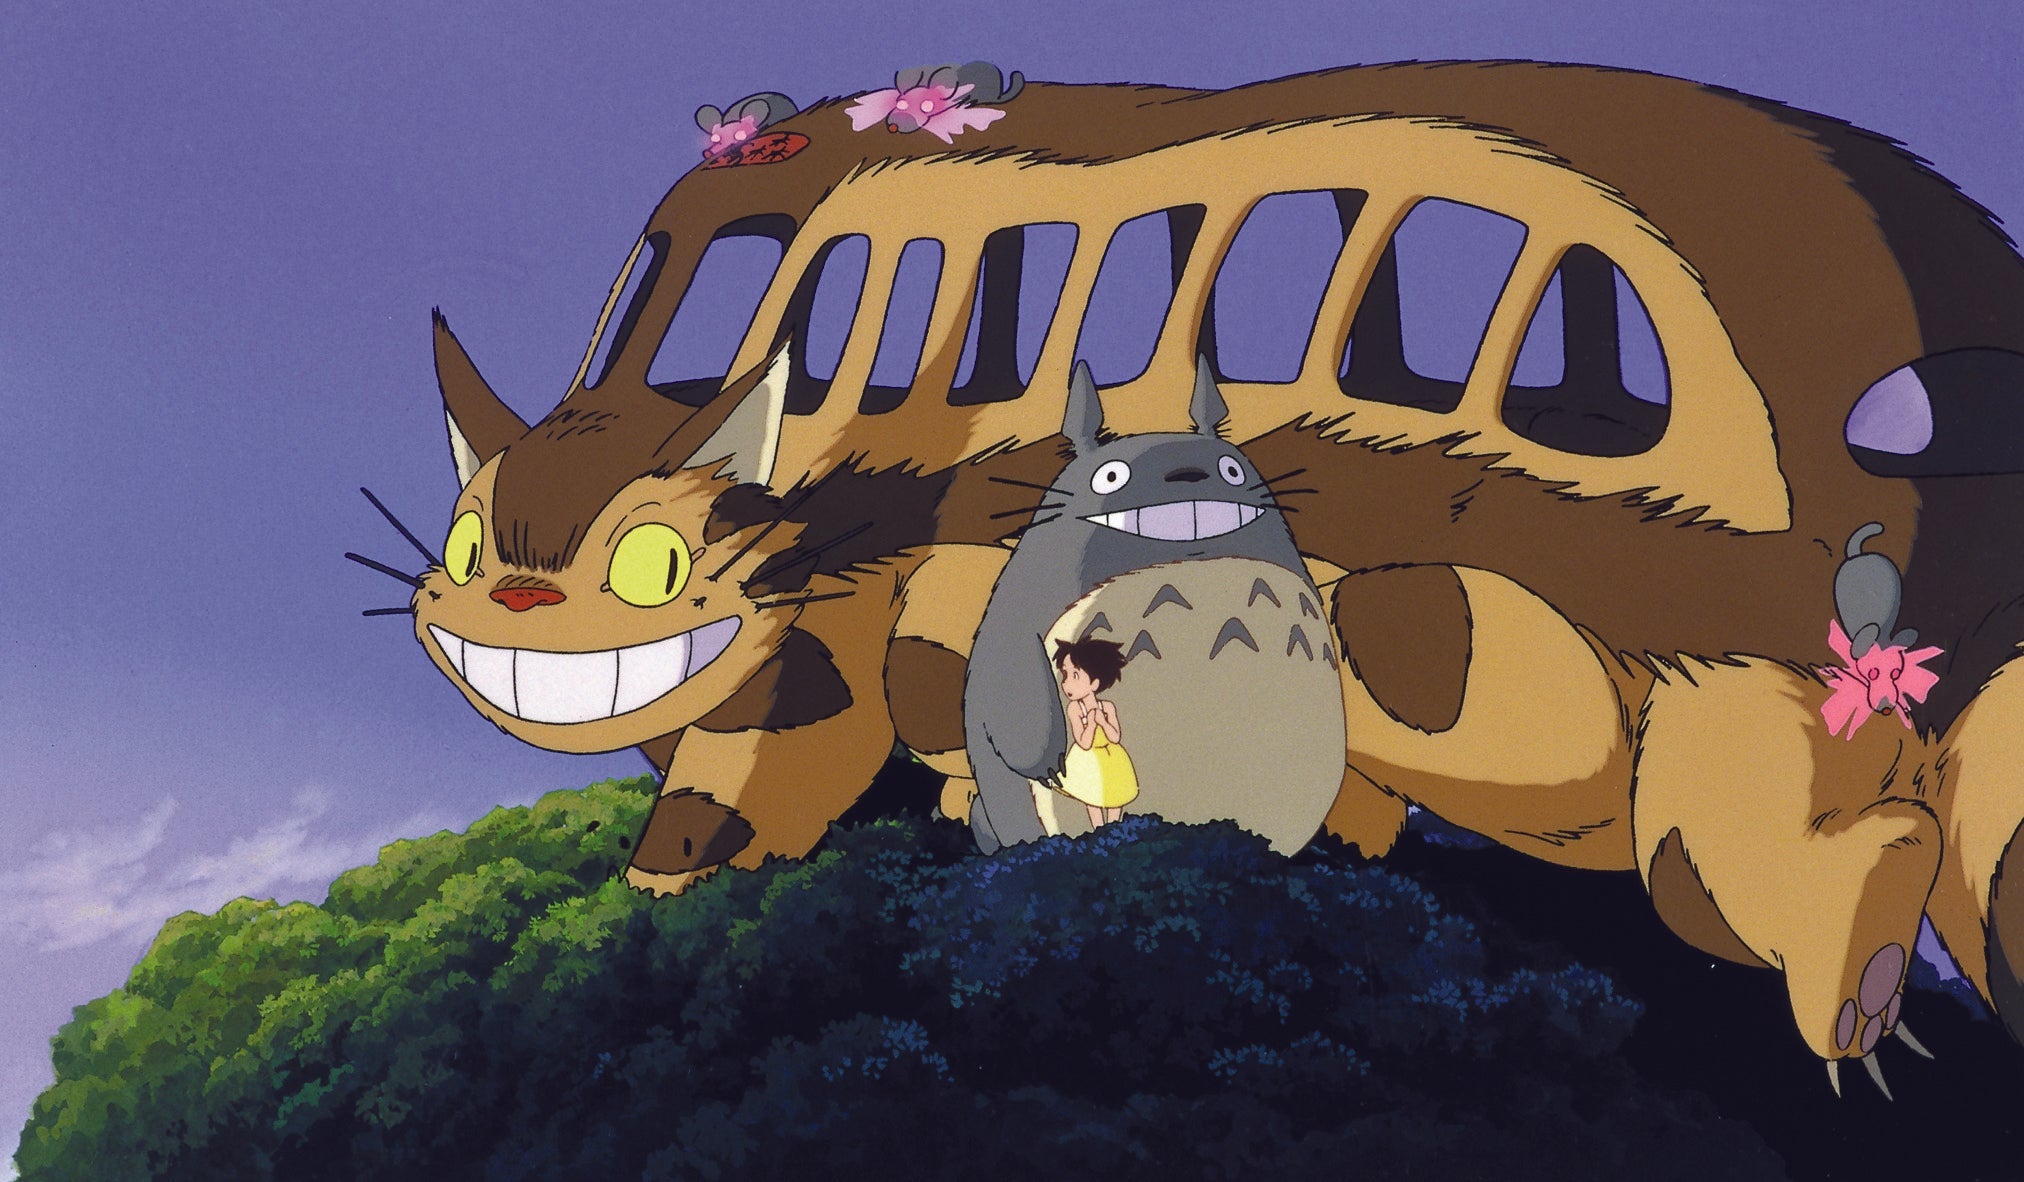 Mon Voisin Totoro Edition Collector 2 DVD / Studio Ghibli N°8 De